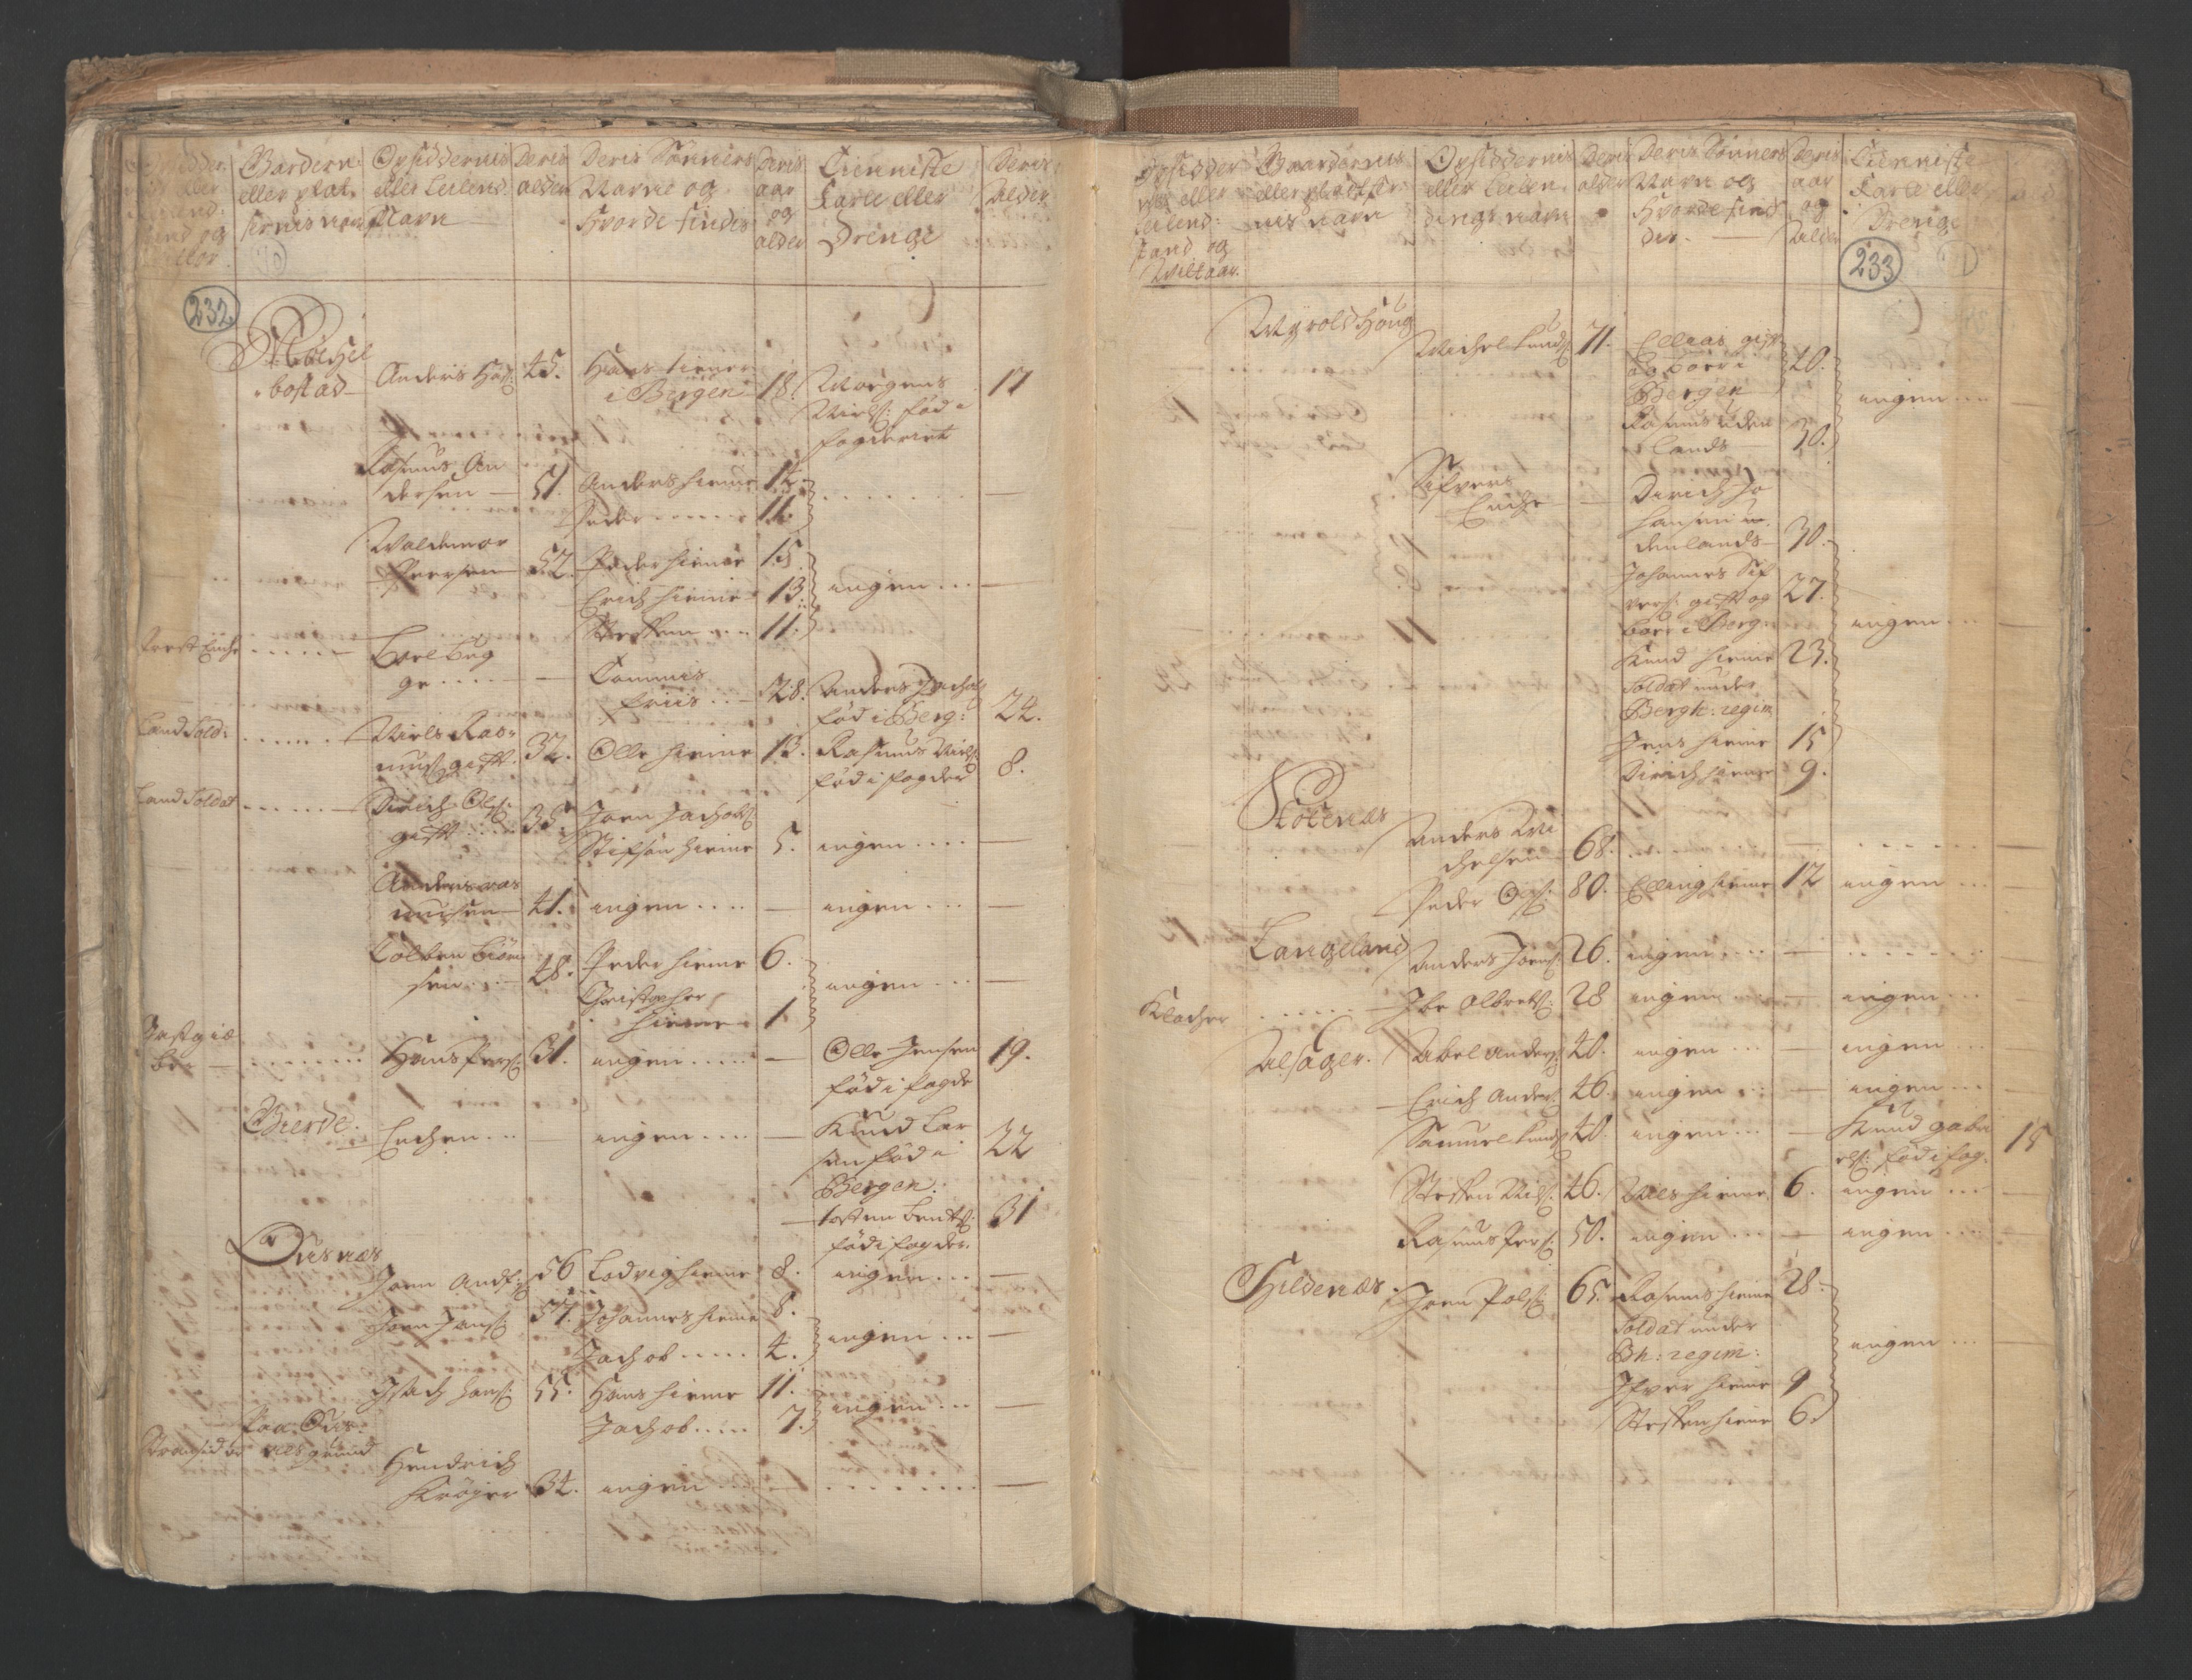 RA, Census (manntall) 1701, no. 9: Sunnfjord fogderi, Nordfjord fogderi and Svanø birk, 1701, p. 232-233